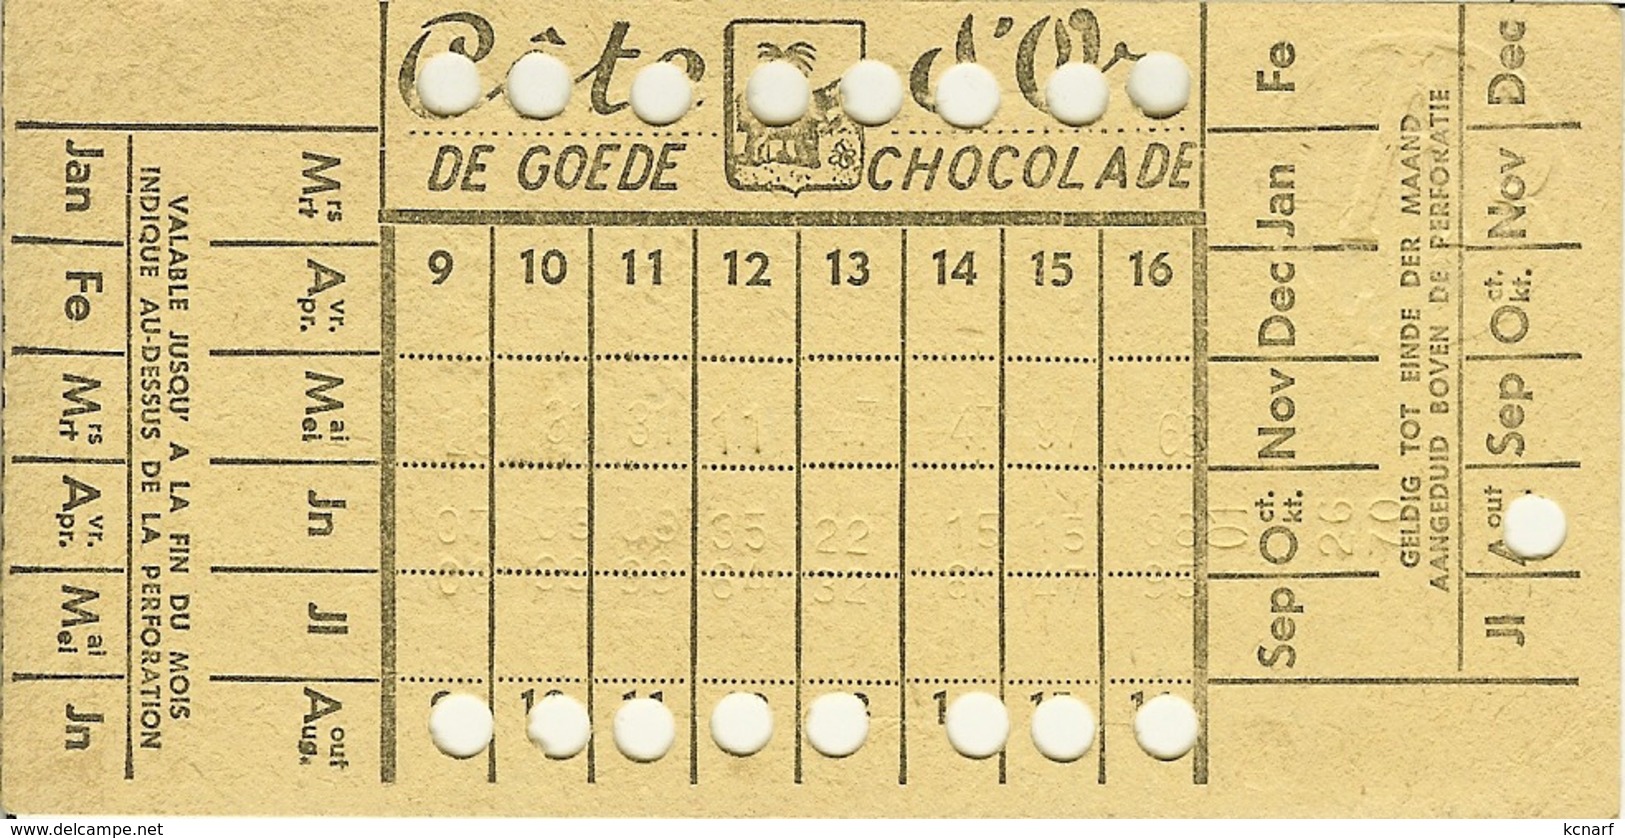 Carte De 16 Voyages Urbains S.T.I.B / M.I.V.B Avec Pub Le Bon Chocolat ôte D'Or / De Goede Chocolade . - Europe